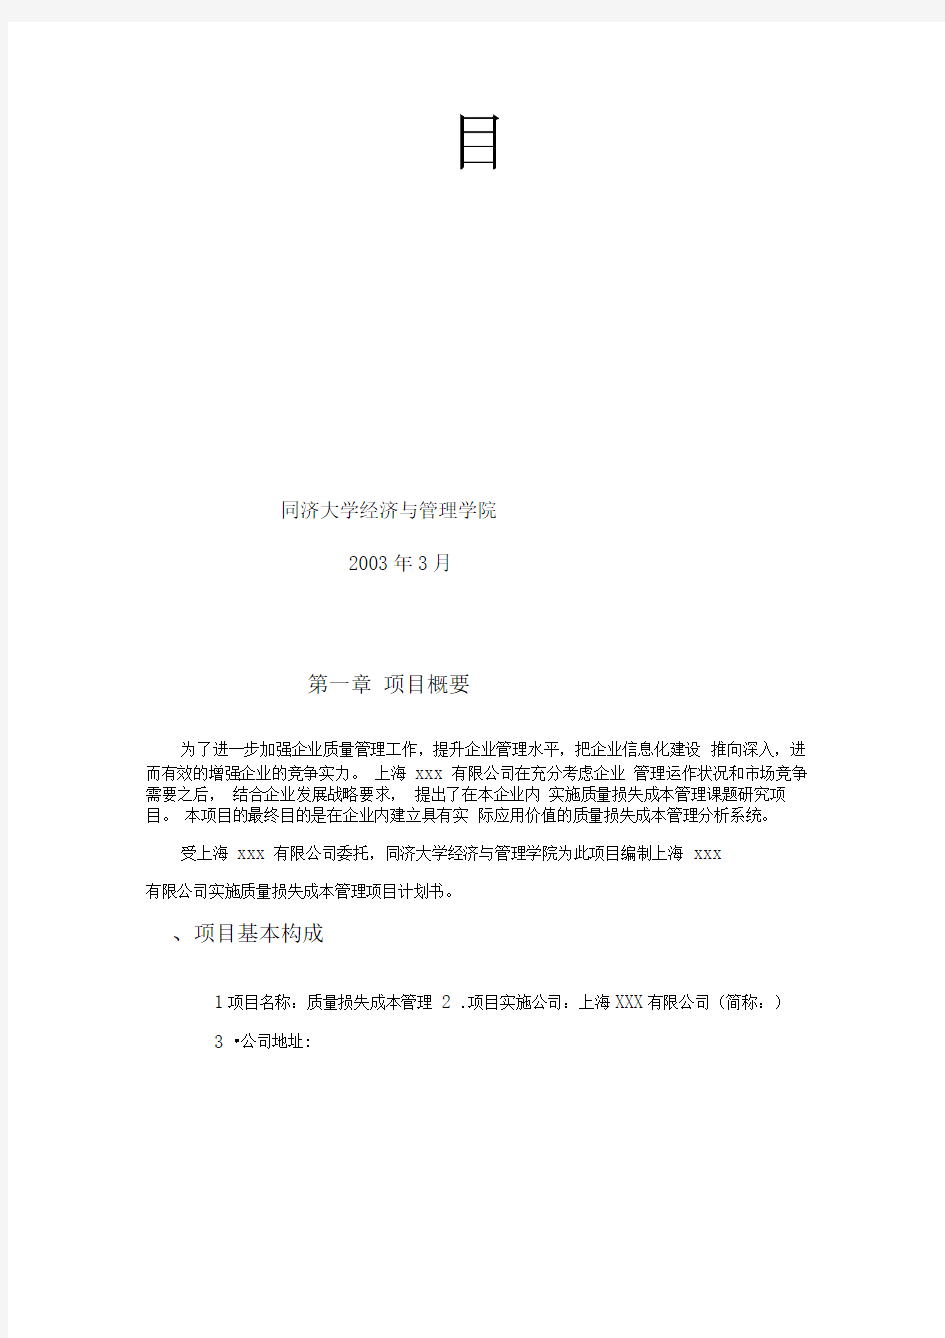 上海××实施质量损失成本管理项目计划书